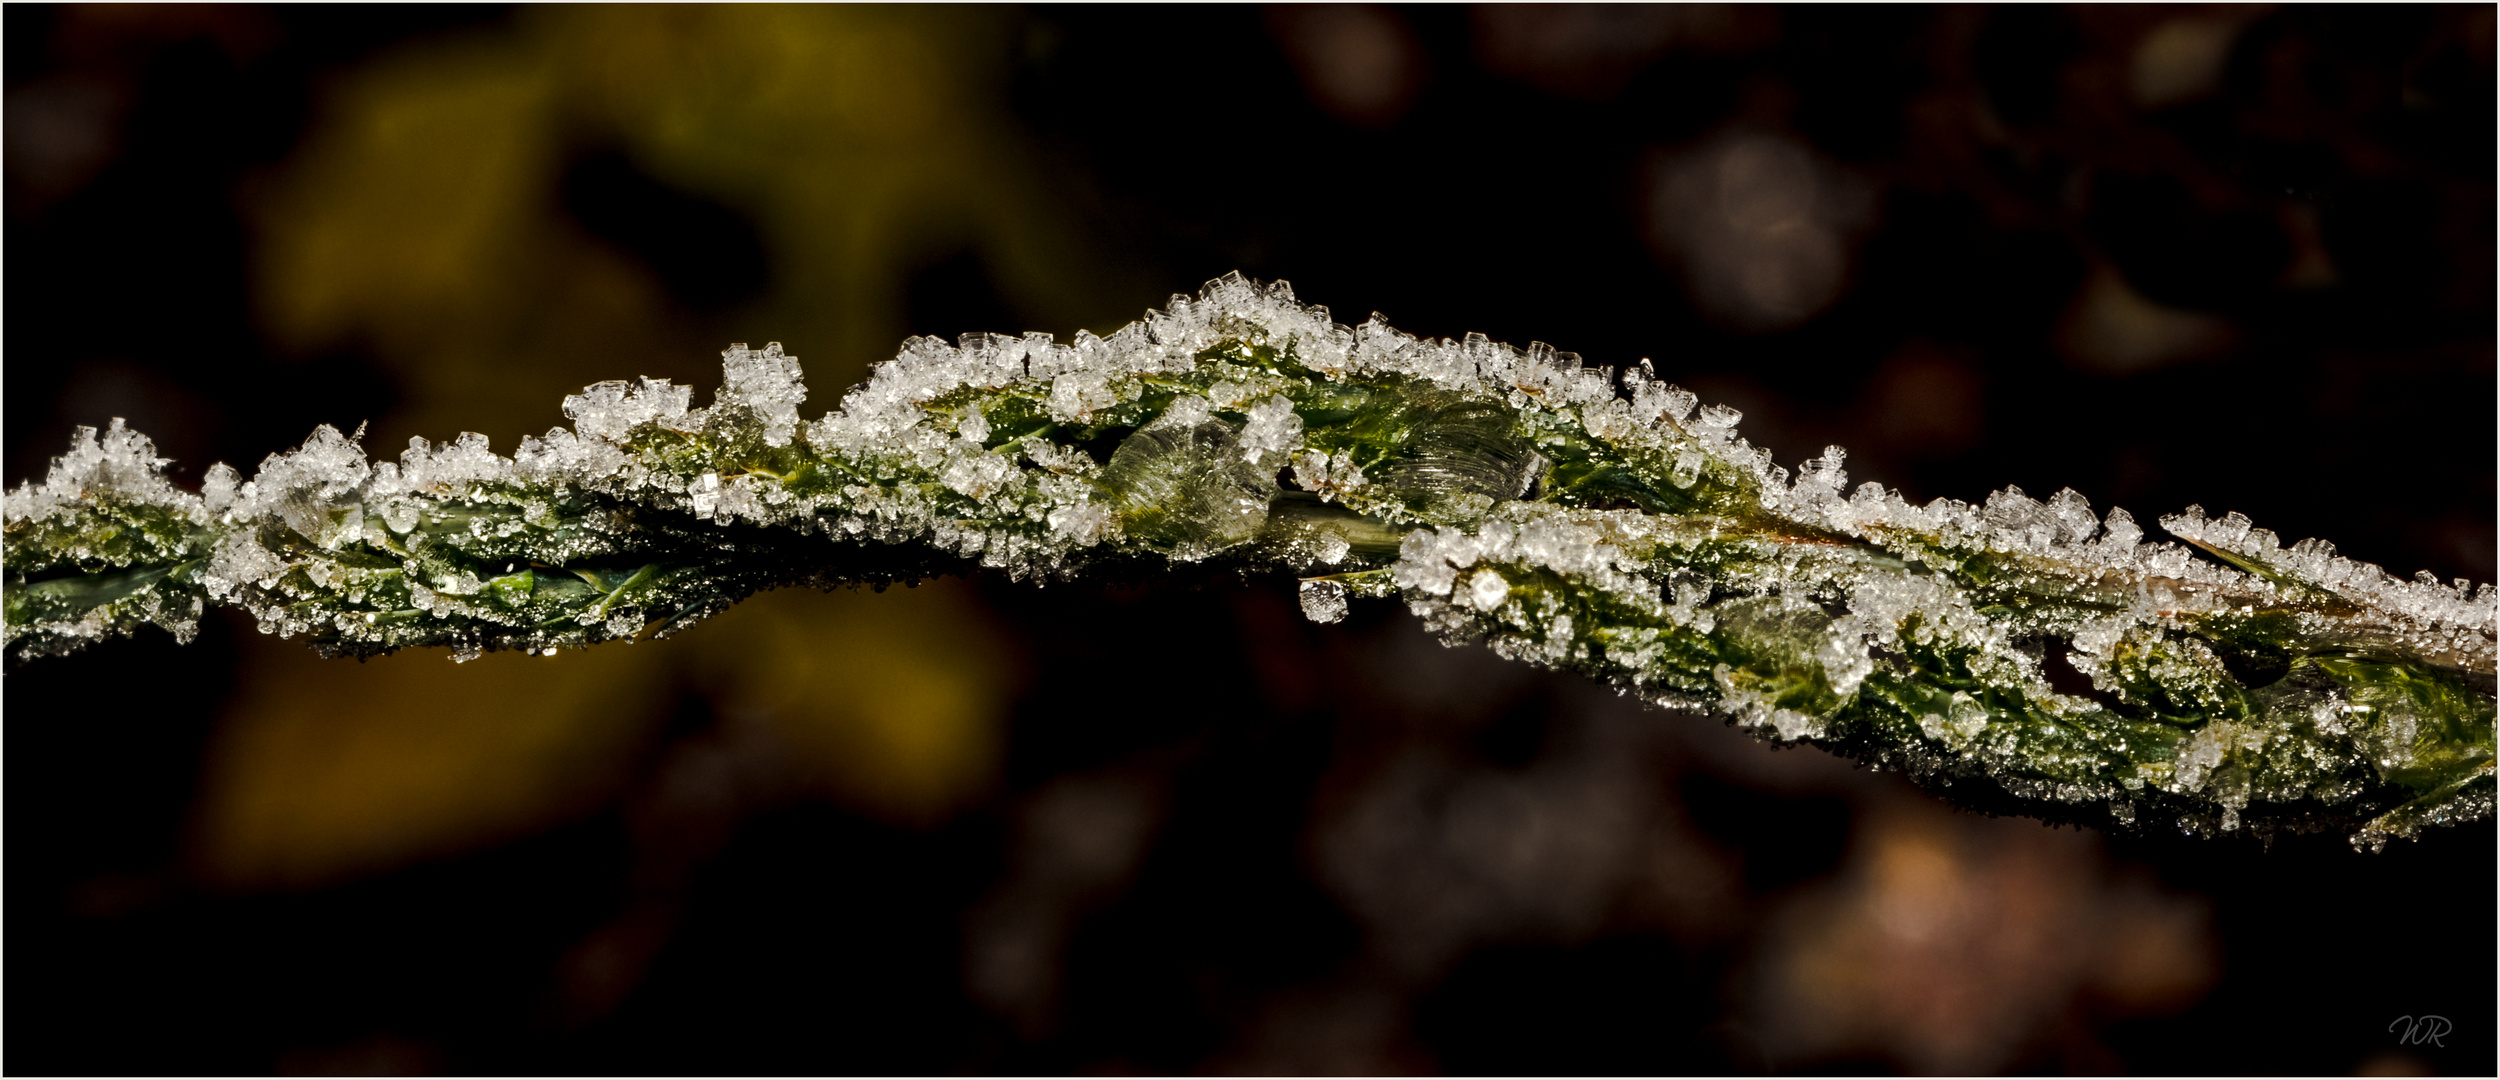 Frost auf immergrüner Pflanze